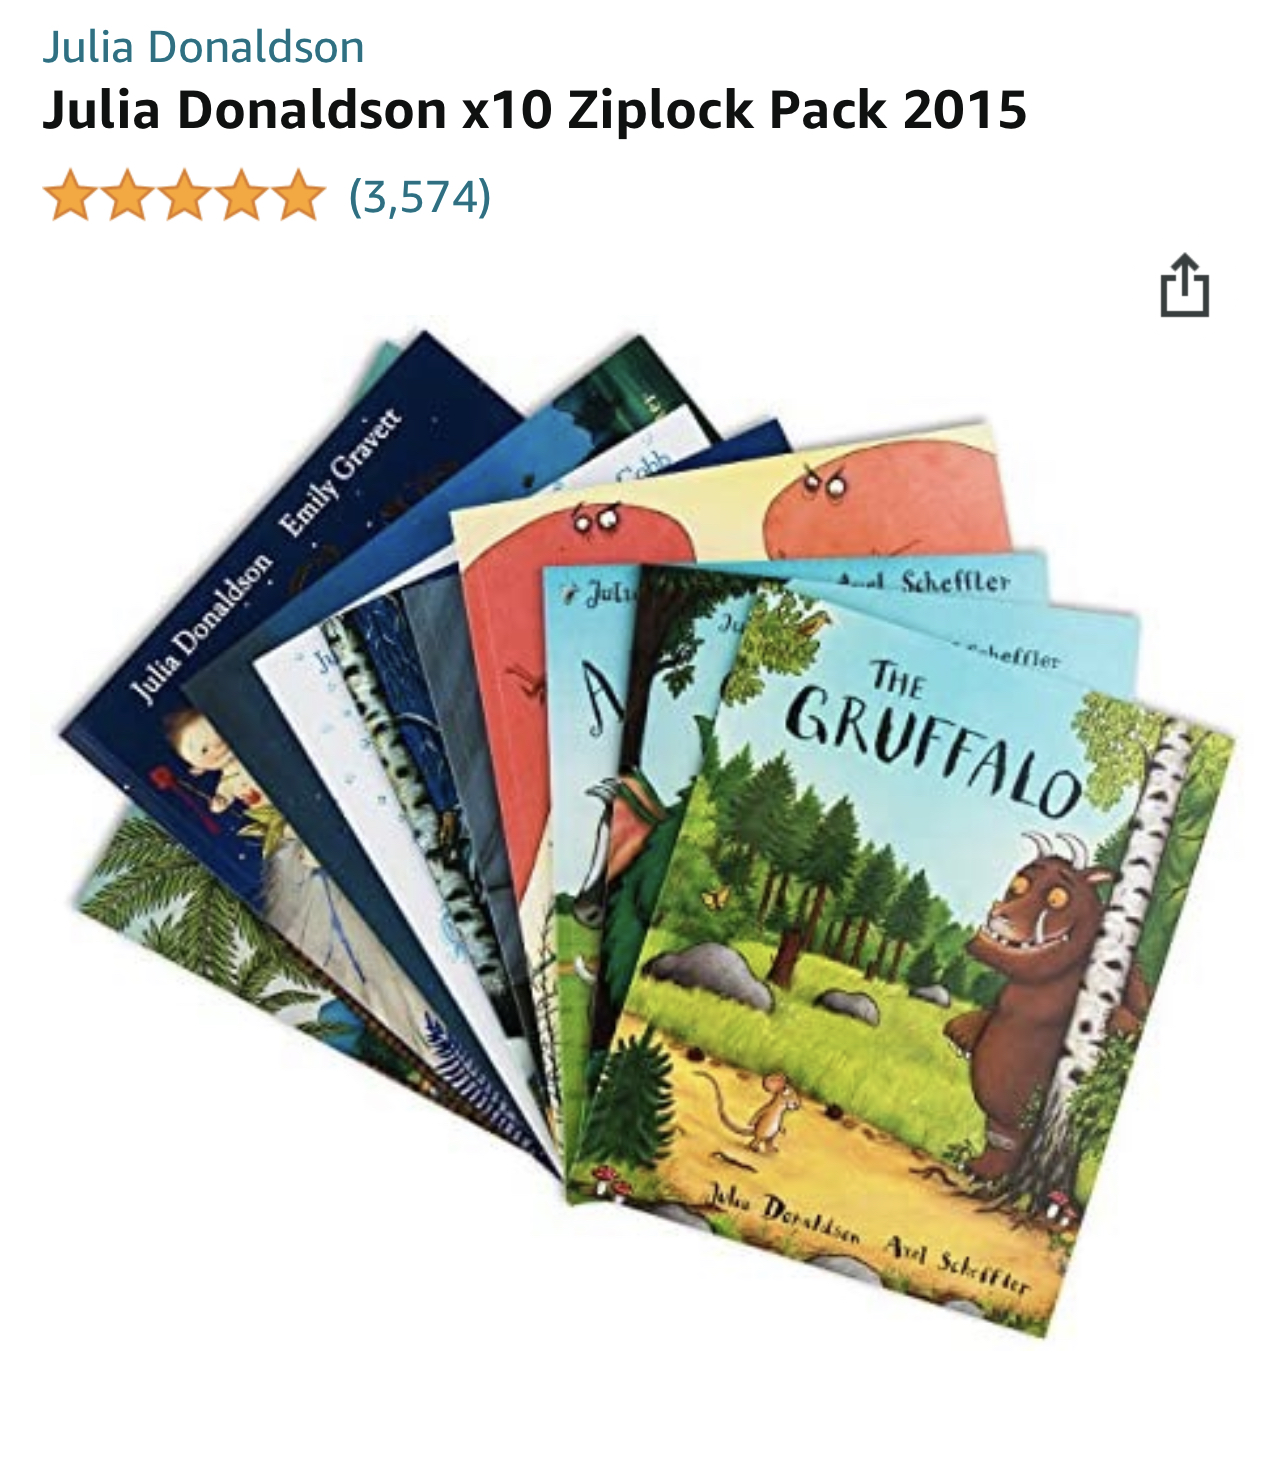 Julia Donaldson books